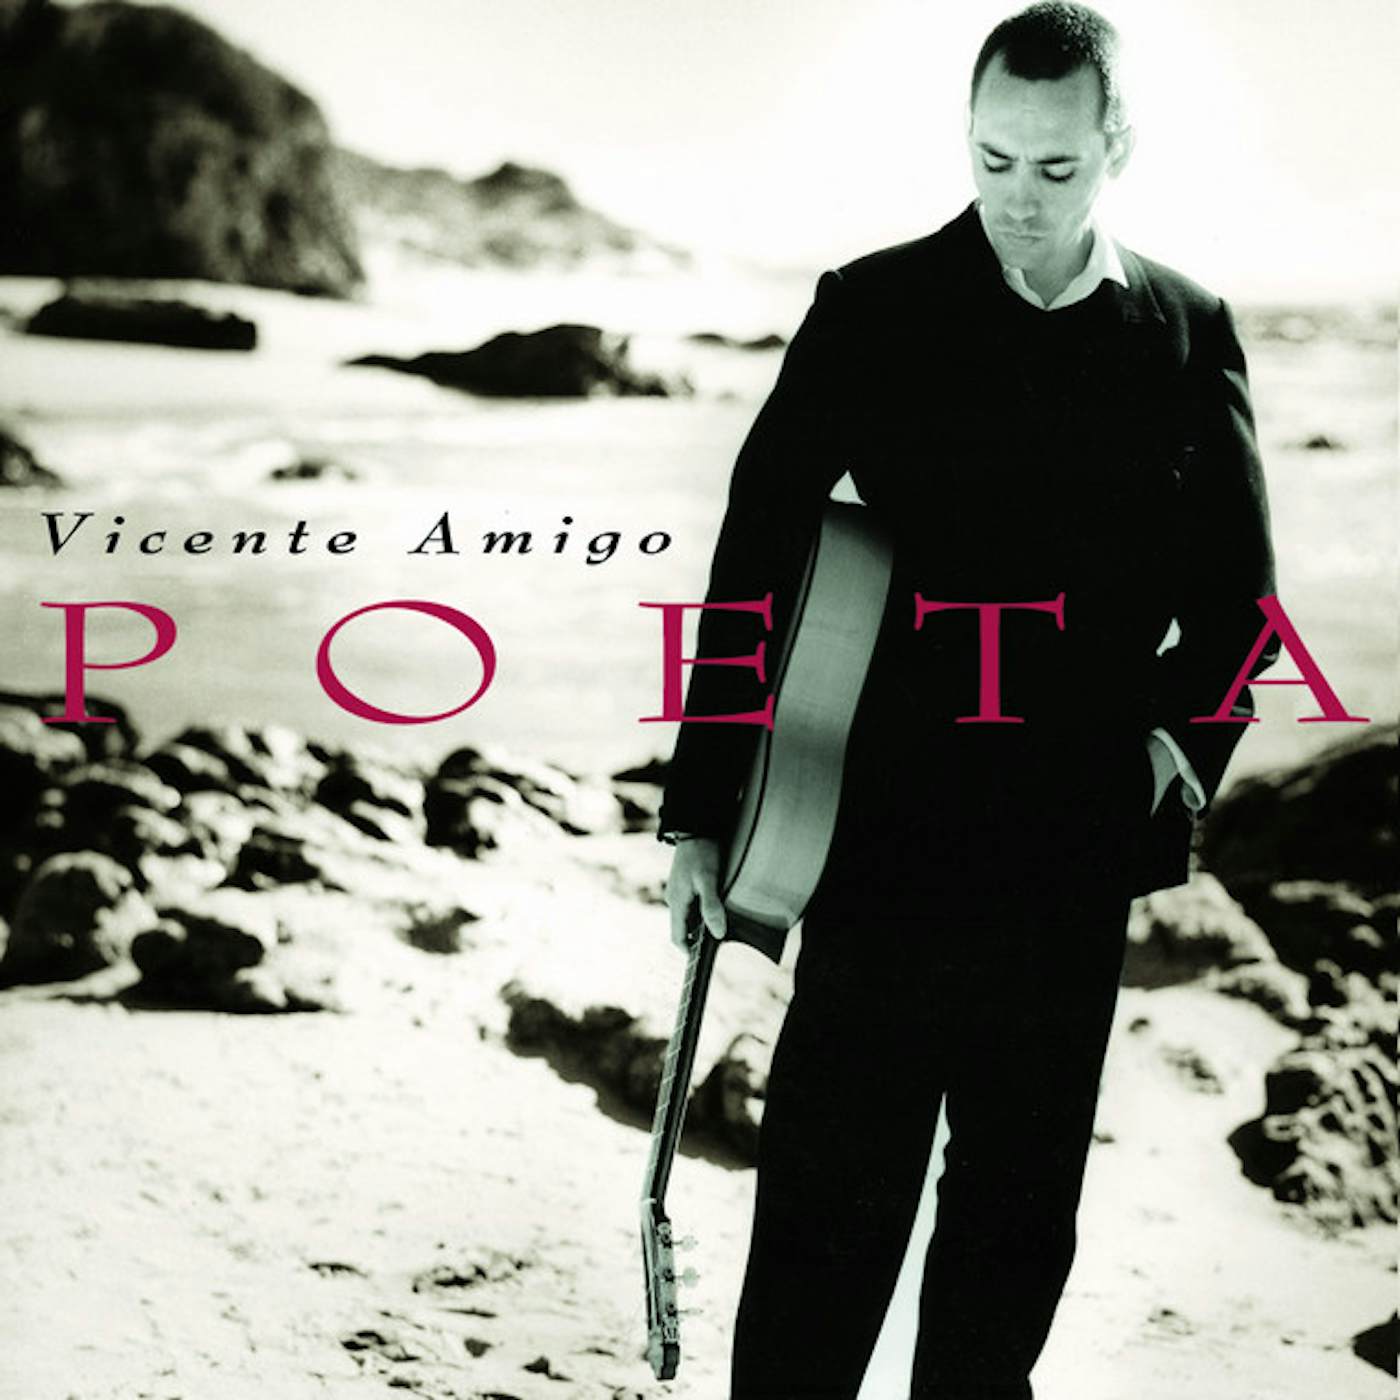 Vicente Amigo POETA CD